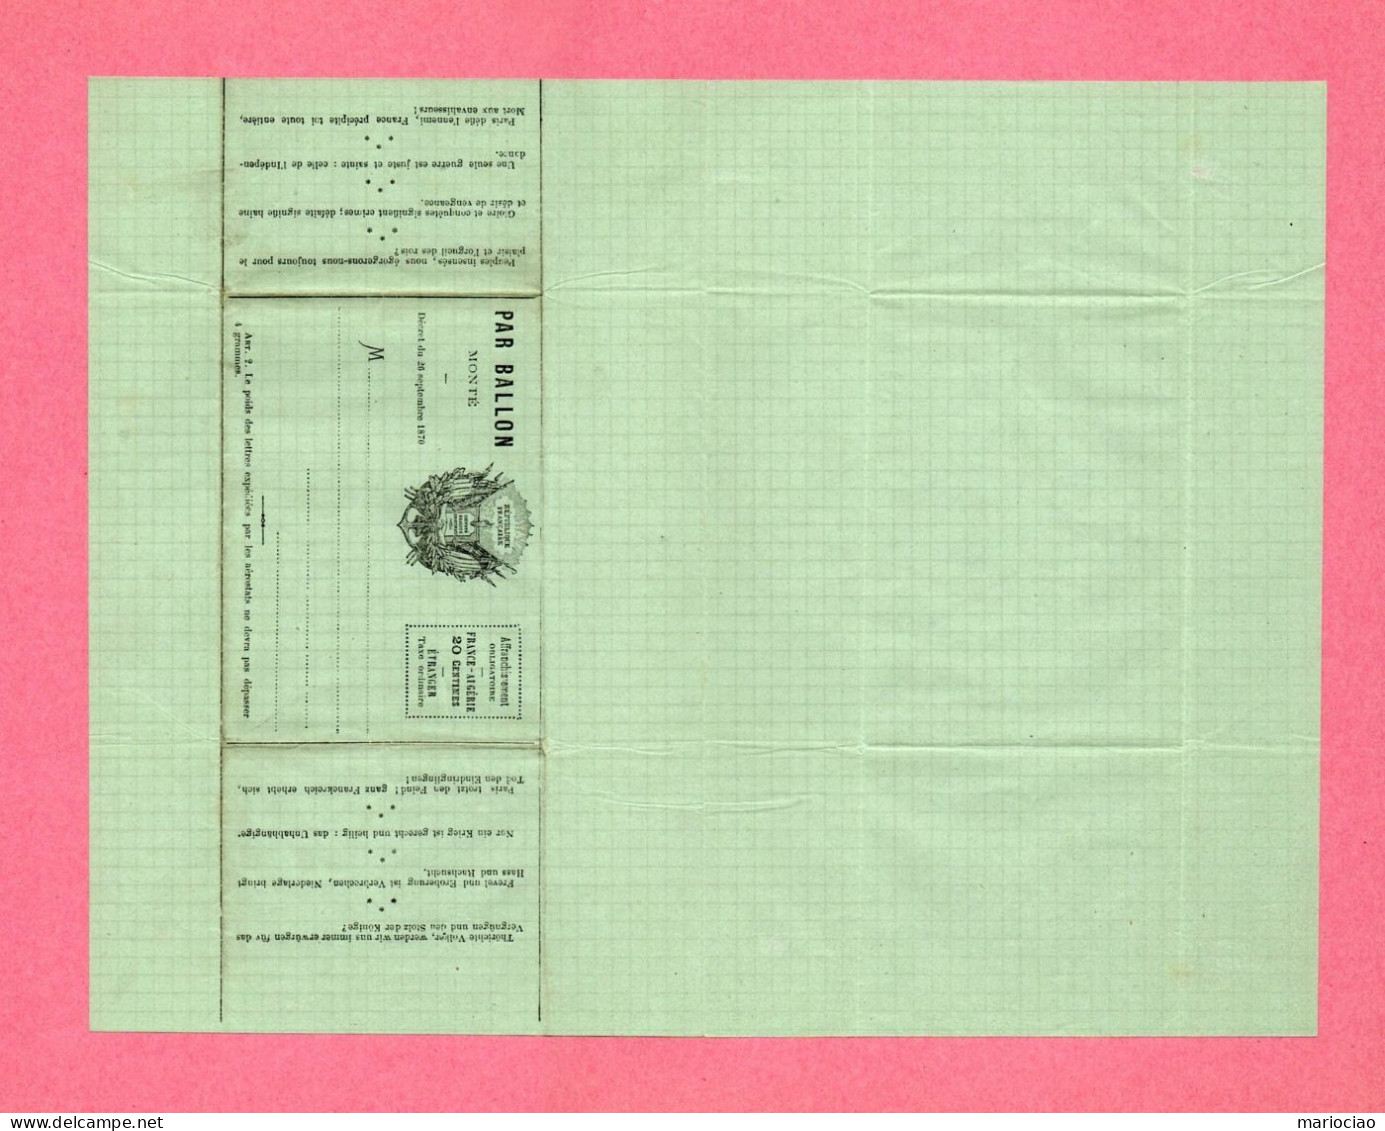 D-FR MONTGOLFIERE Envoi Par Ballon Monté Décret Du 26 Septembre 1870 Papier Vert (B1) - Documents Historiques